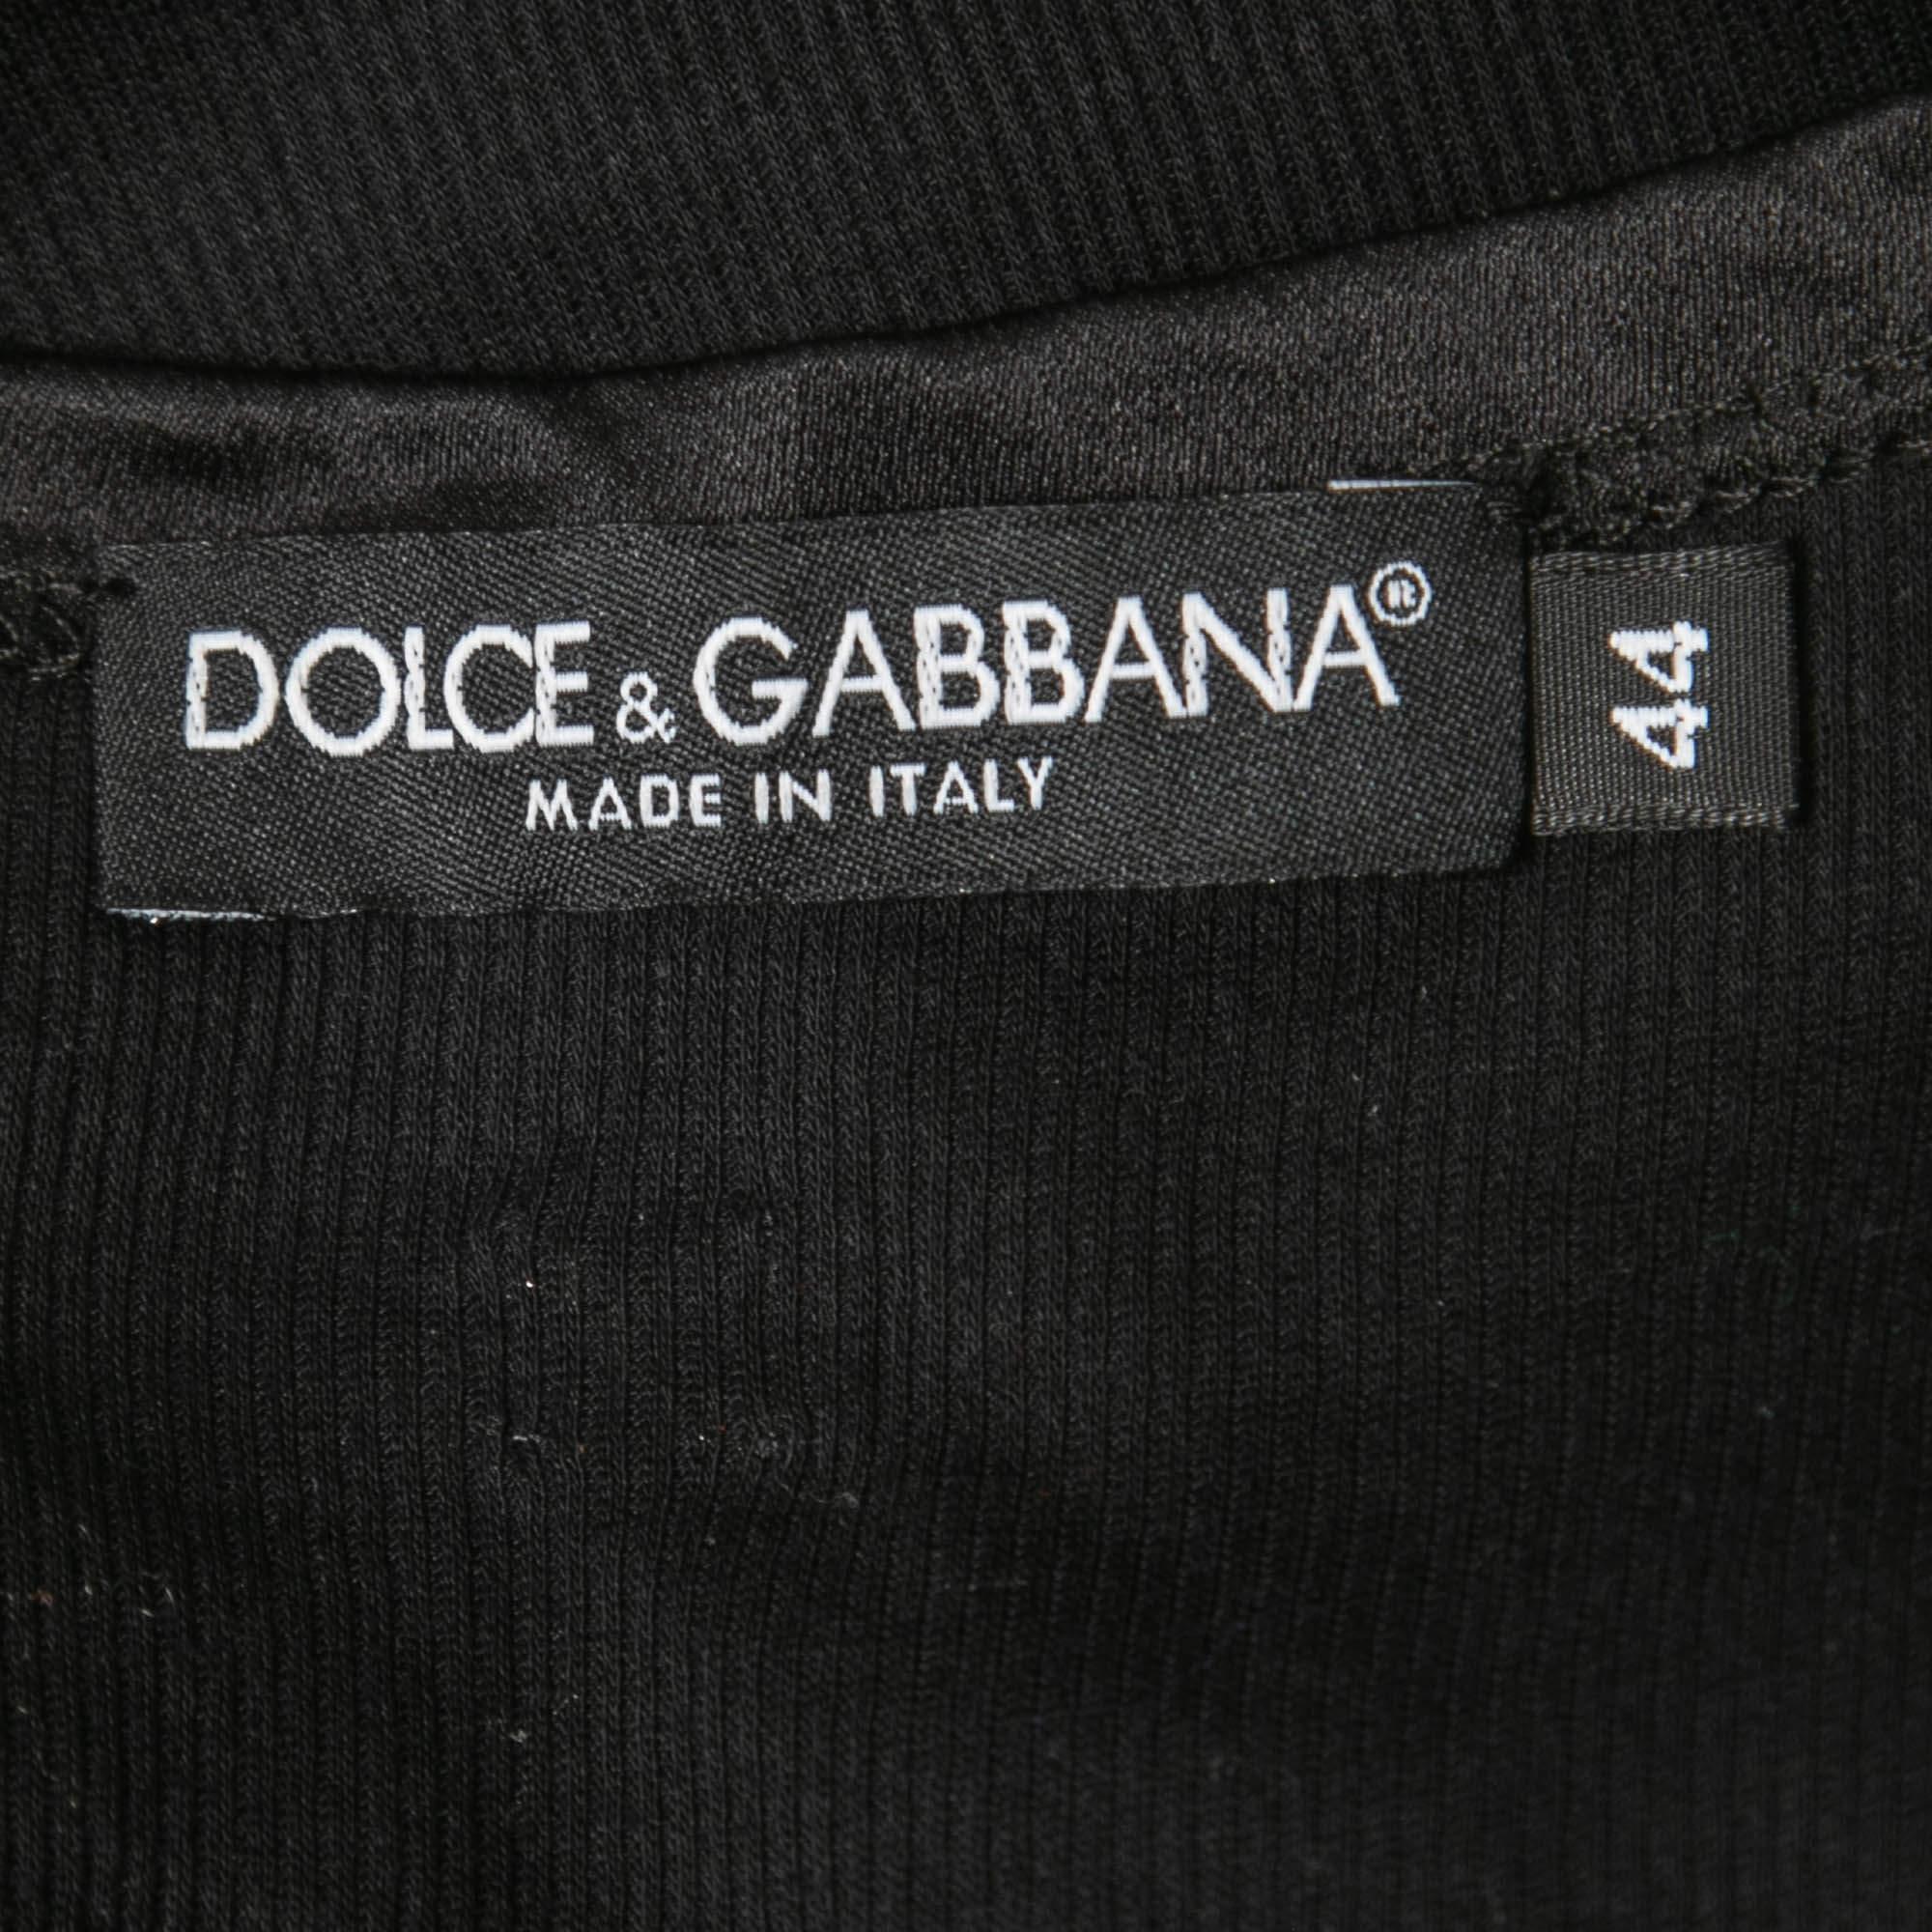 Dolce & Gabbana Black Cotton Knit & Satin Trim Tank Top M For Sale 1